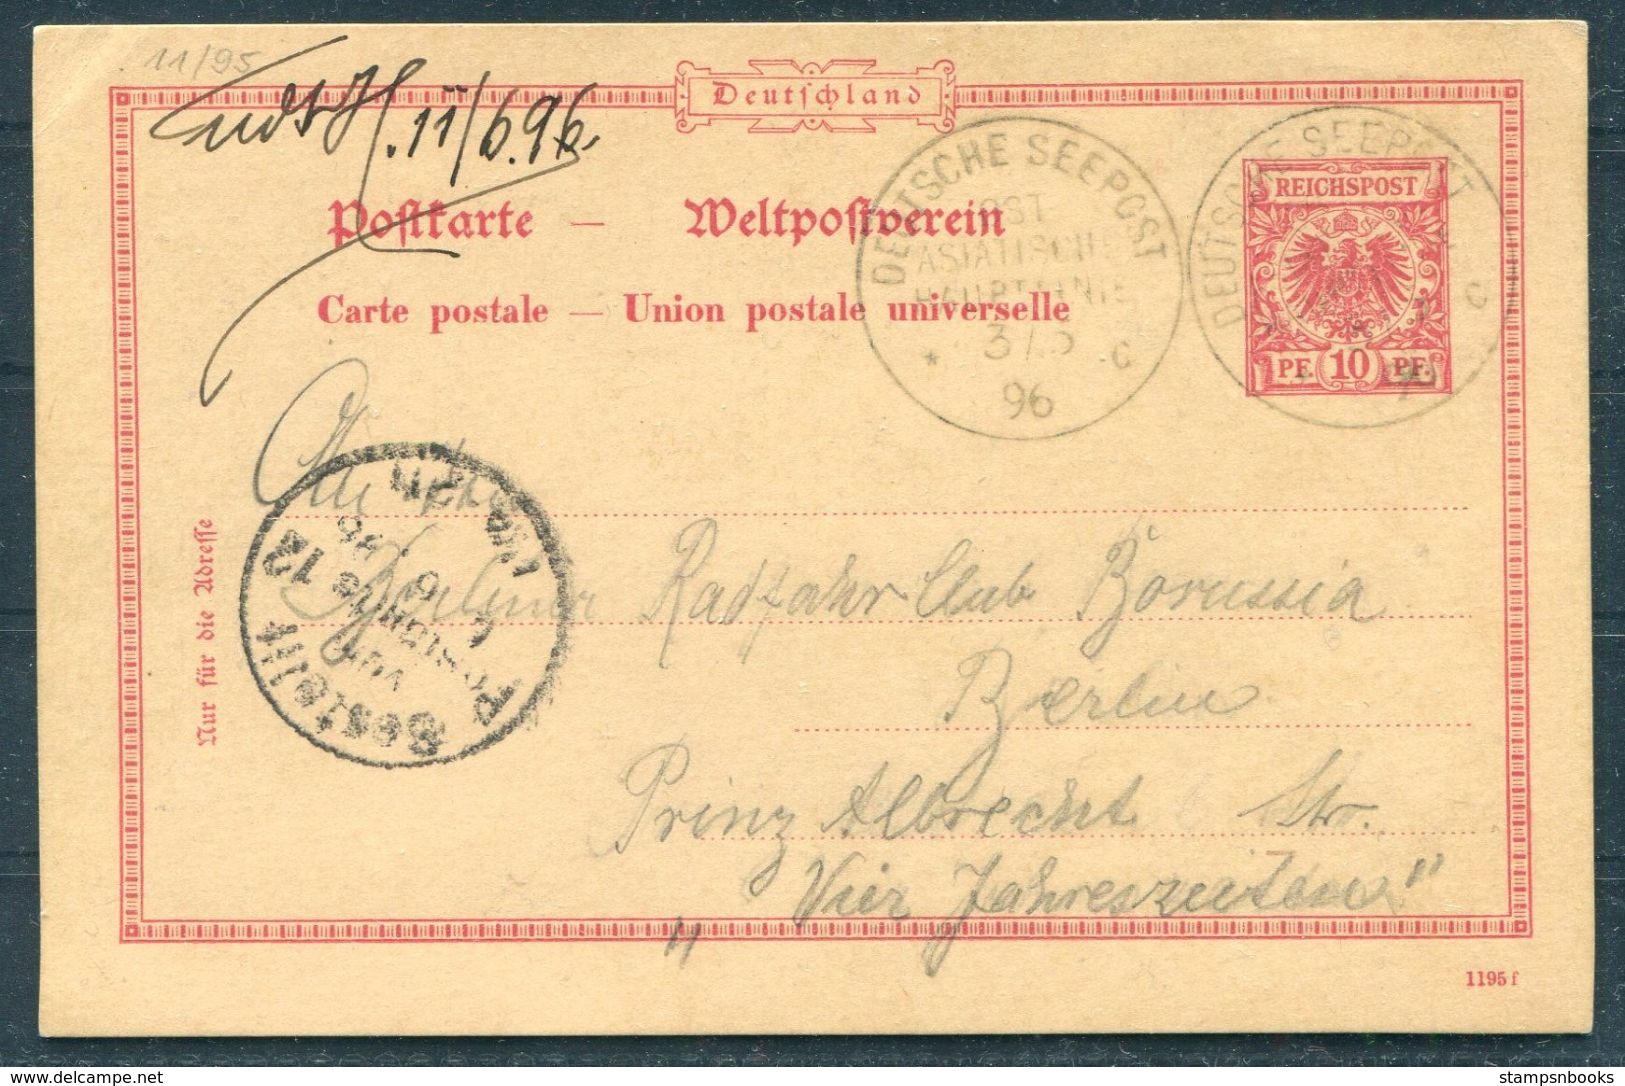 1896 China Germany Stationery Postcard, Deutsche Seepost - Berlin. Ship OSTASIATISCHE HAUBTLINIE - Storia Postale